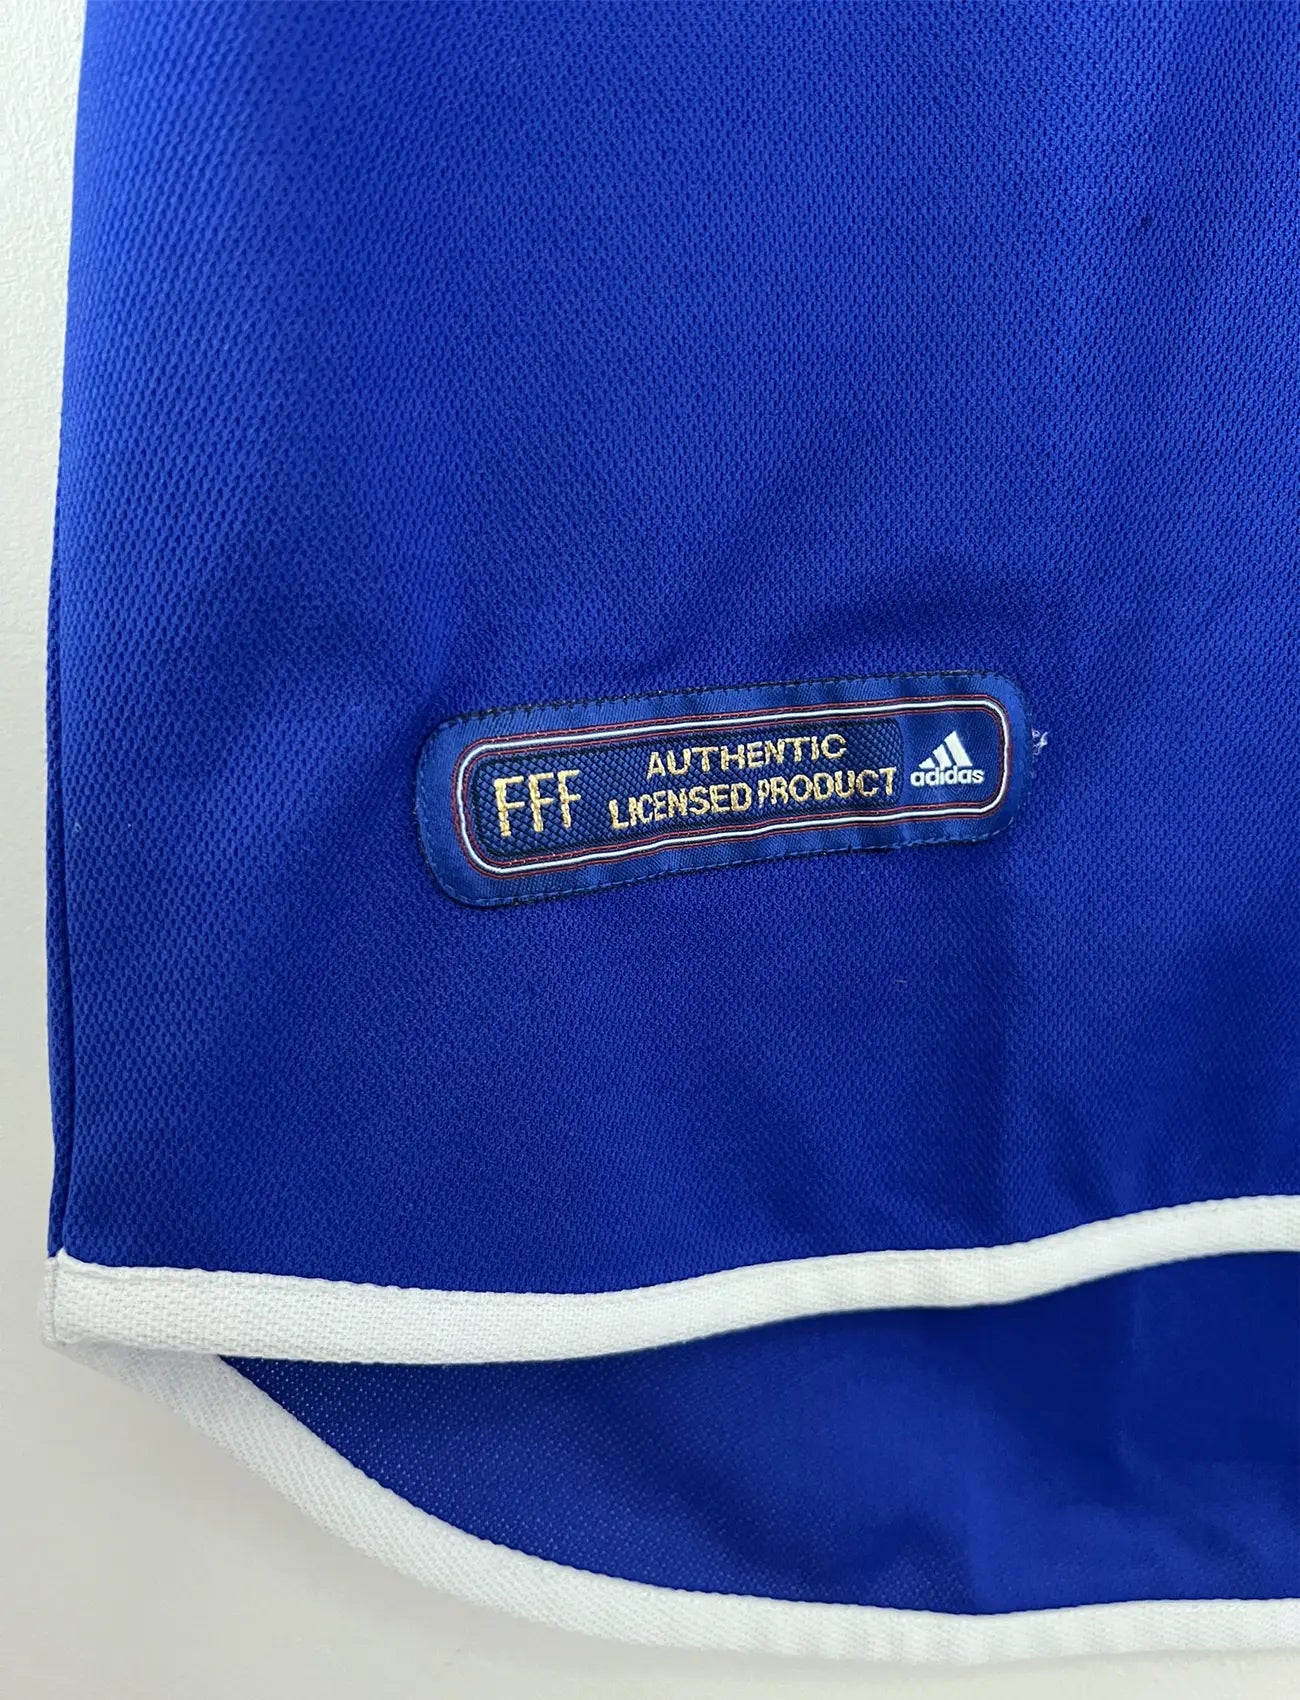 Maillot de foot vintage domicile de l'équipe de france 2000. Le maillot est de couleur bleu blanc et rouge. On peut retrouver l'équipementier adidas. Il s'agit d'un maillot authentique comportant les numéros 647194.